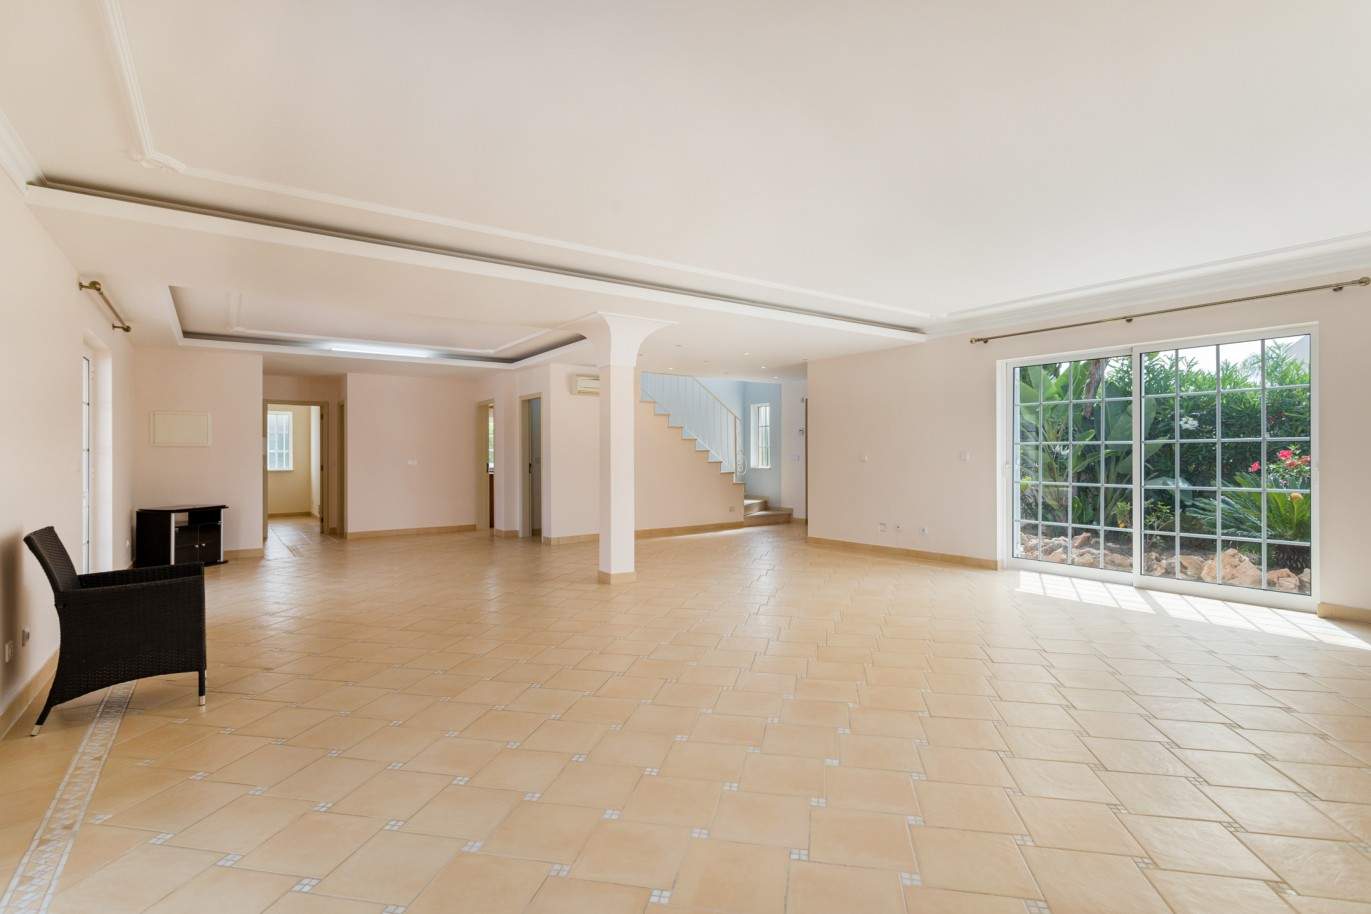 4 Bedroom Villa with pool à vendre à Quarteira, Algarve_201714